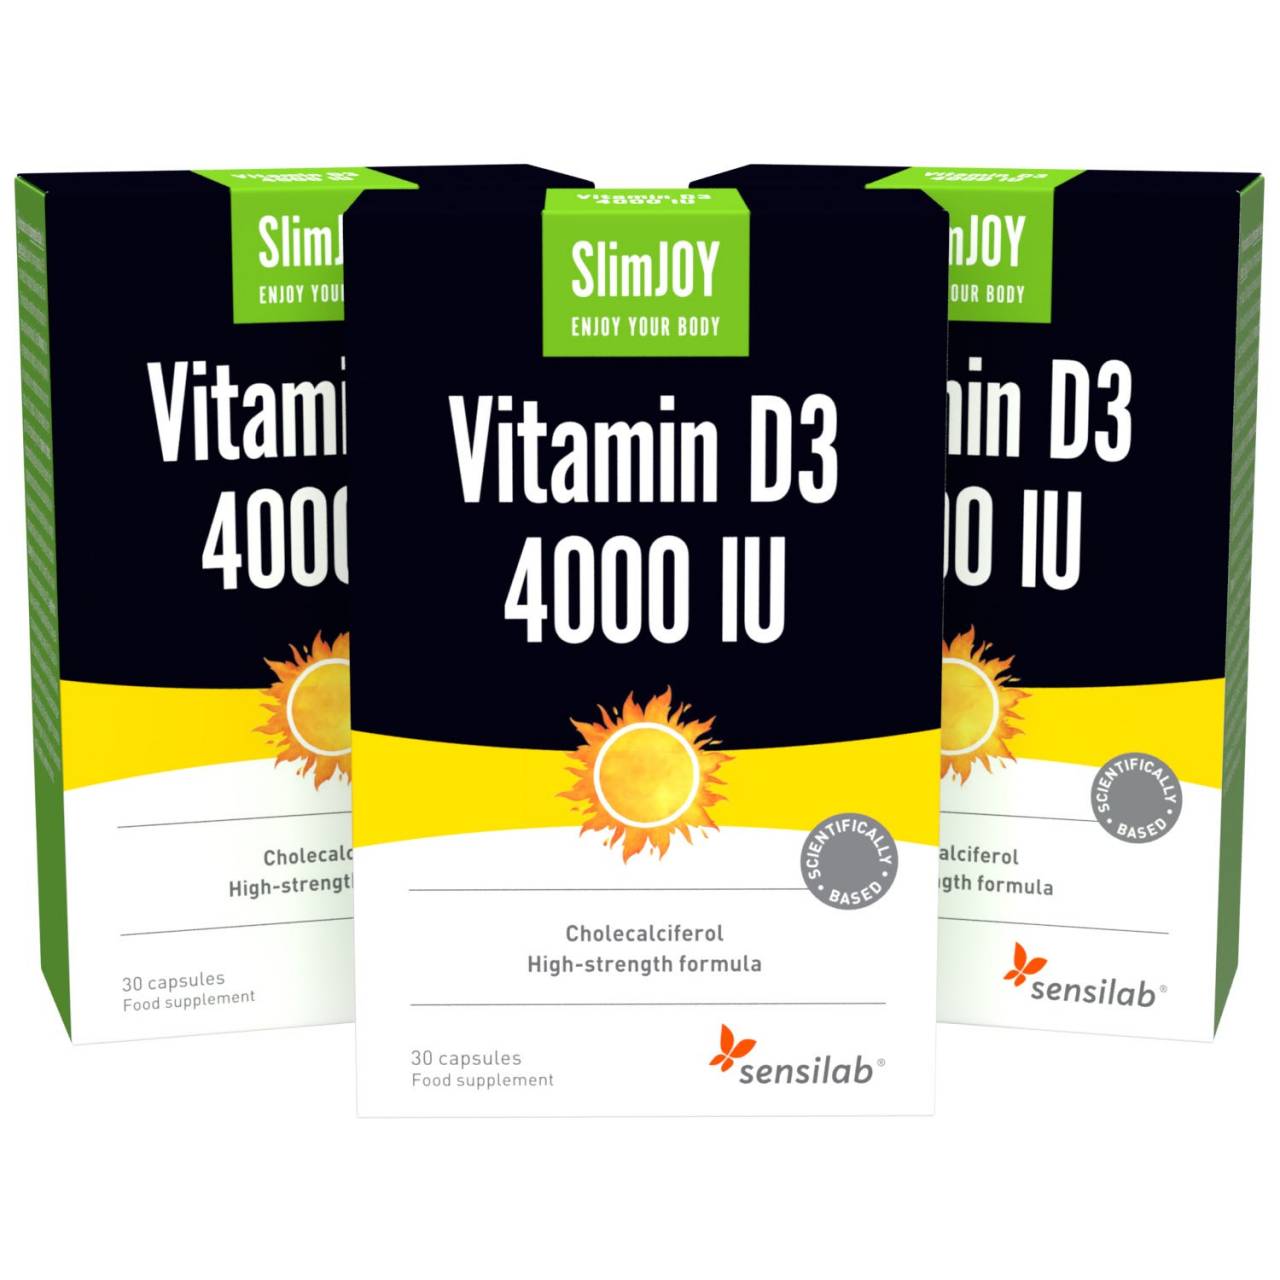 Vitamin D3 4000 IU 1+2 GRATIS | Formel med høj effektivitet af 4000 IU | 3 x 30 kapsler til maksimum 450 dage | SlimJOY.